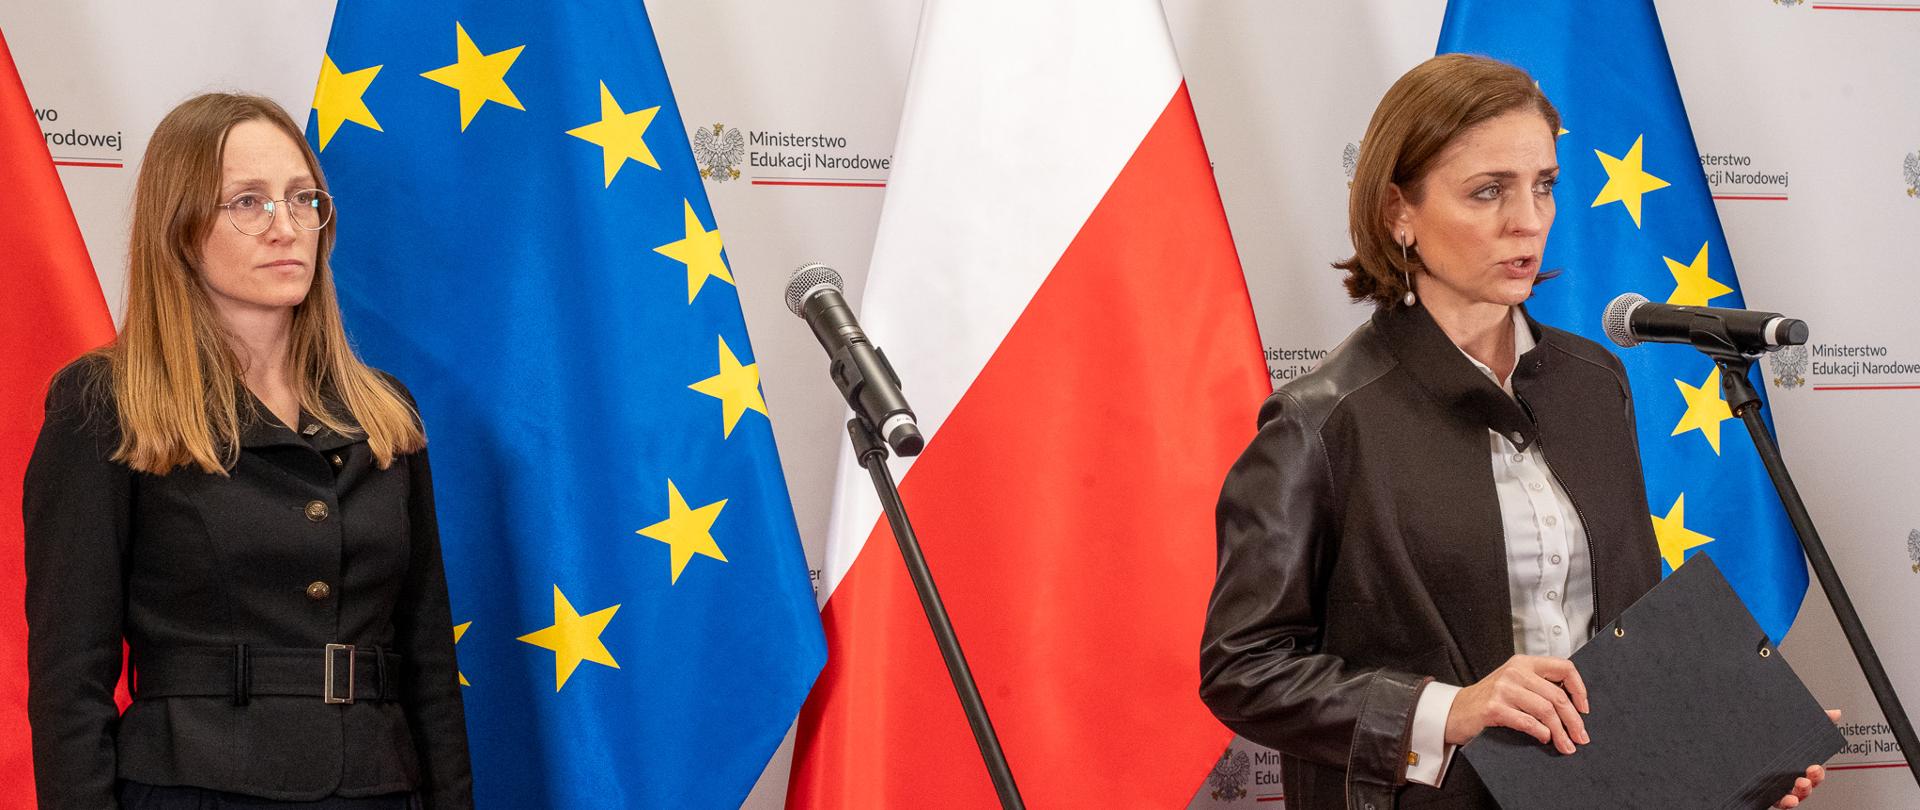 Wiceminister Joanna Mucha stoi przy mikrofonie i mówi, po lewej stronie stoi kobieta w ciemnej garsonce. W tle flagi biało-czerwone i niebieskie ze złotymi gwiazdkami. 